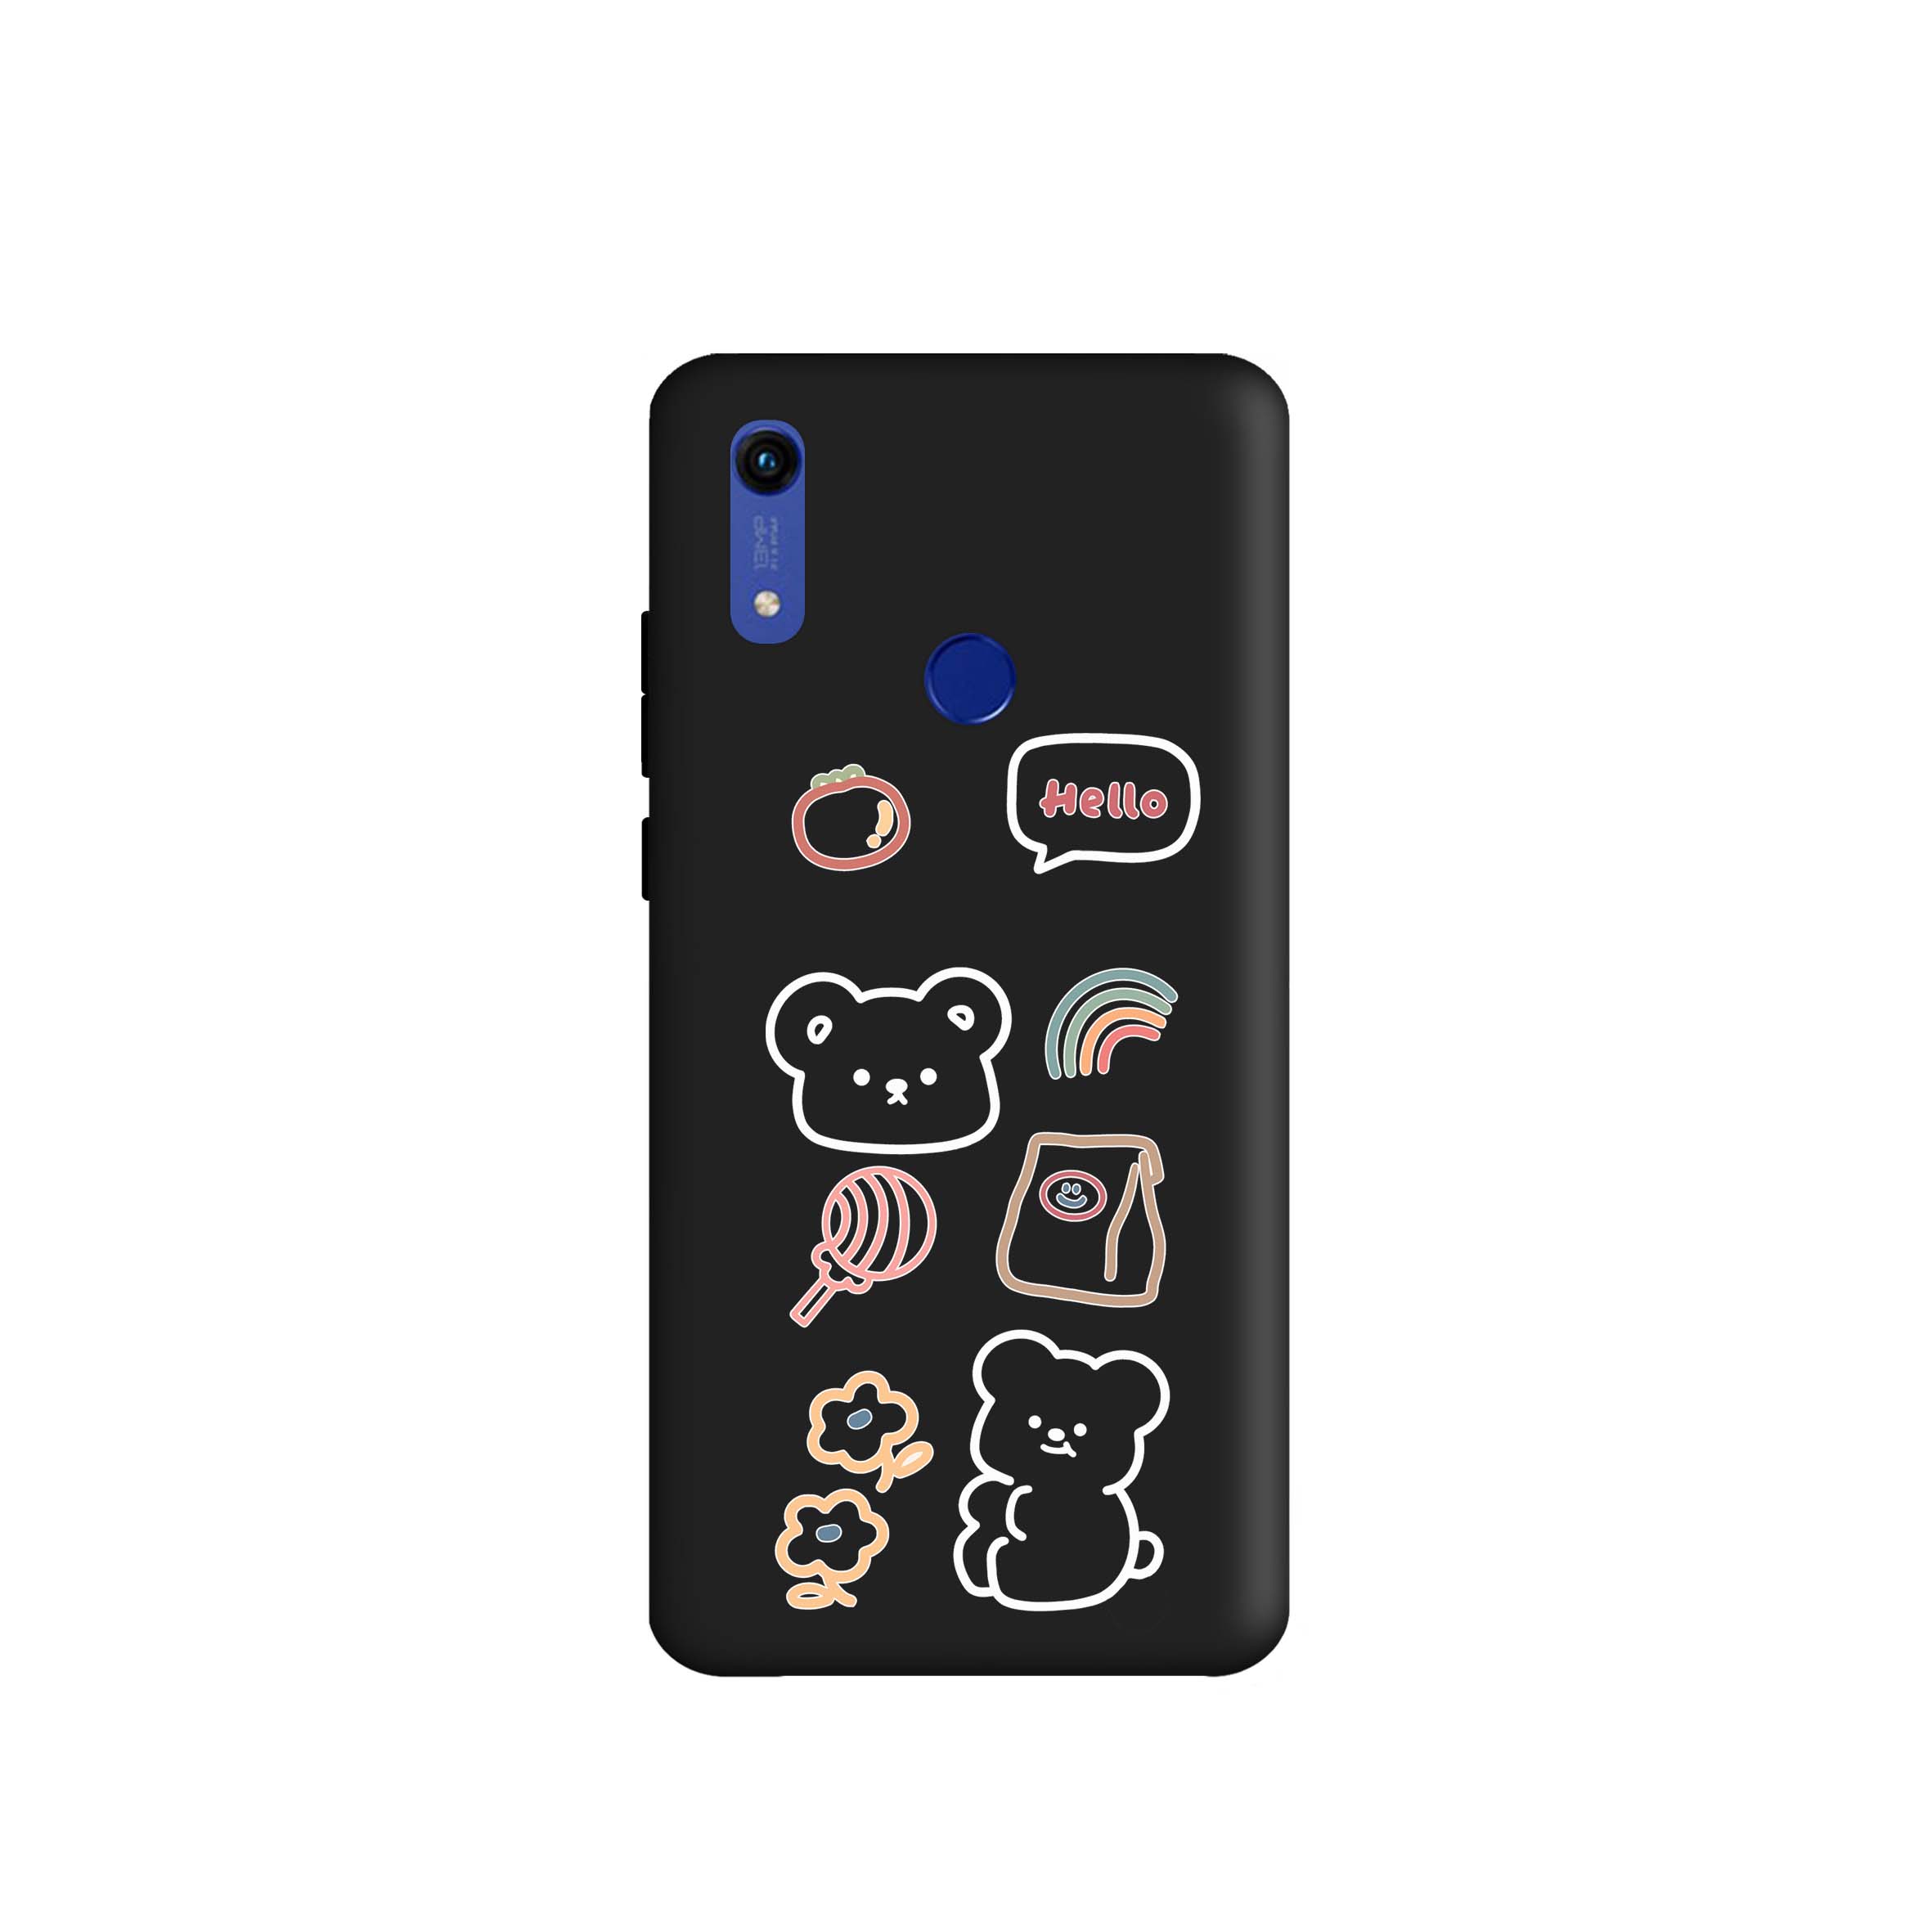 کاور طرح خرس کیوت کد m3731 مناسب برای گوشی موبایل هواوی Y6 Prime 2019